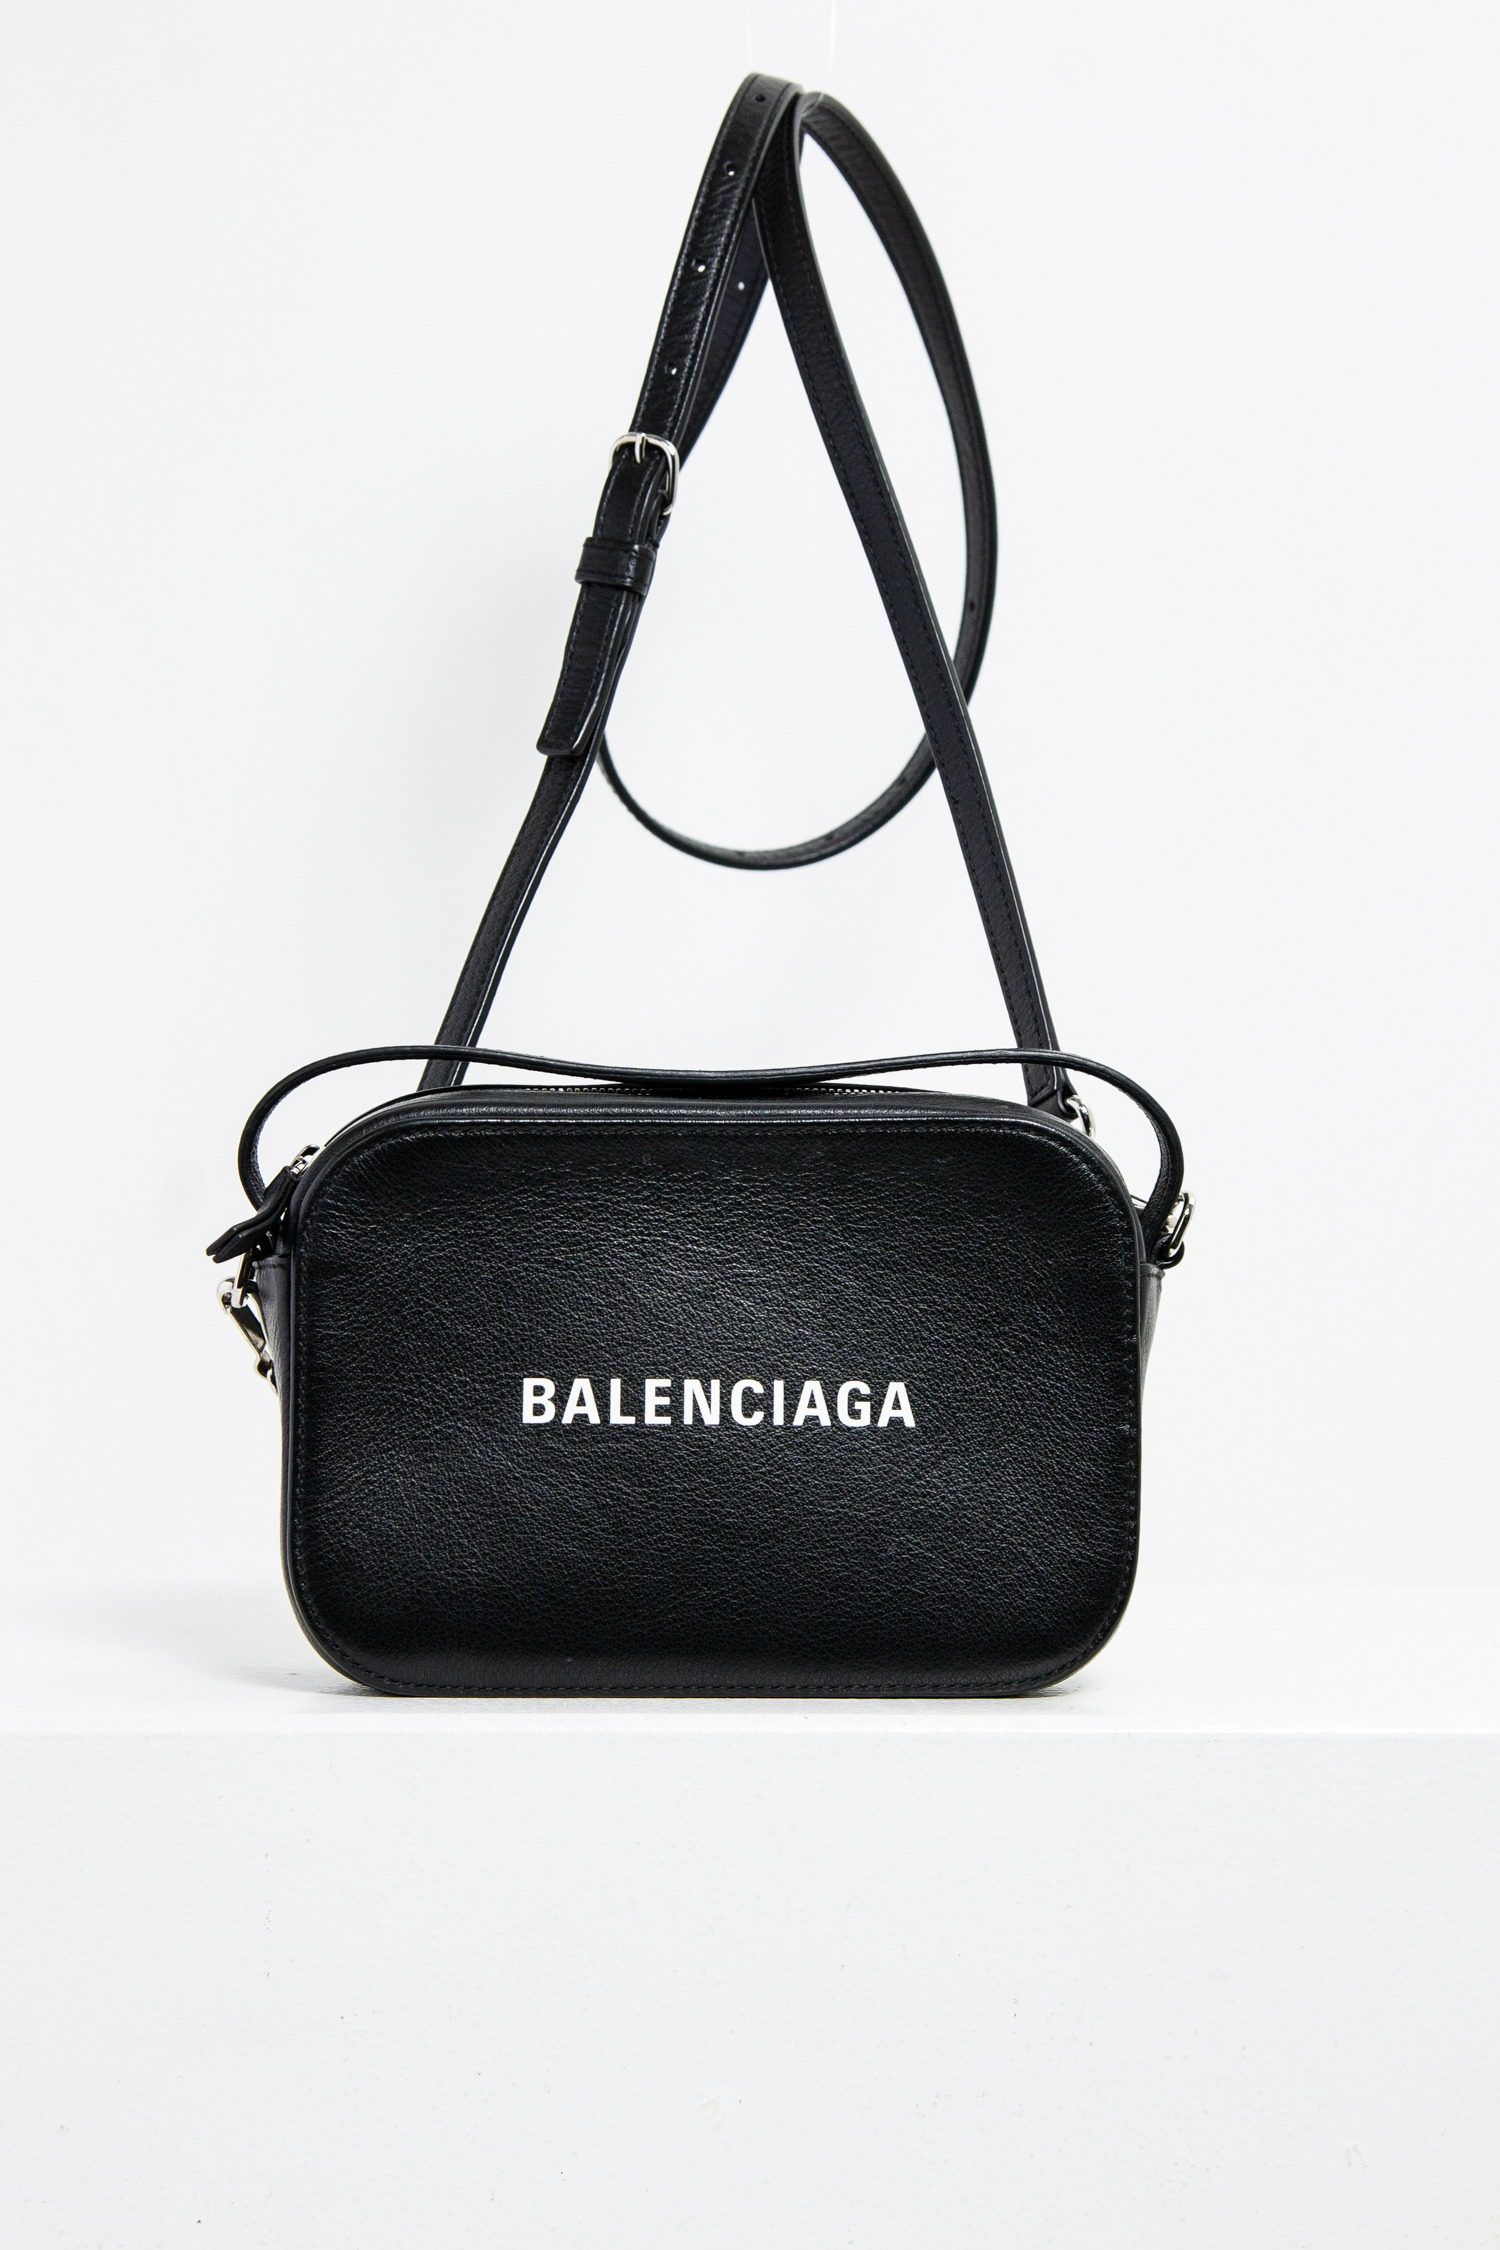 Balenciaga "Everyday Camera Bag" Umhängetasche in schwarz